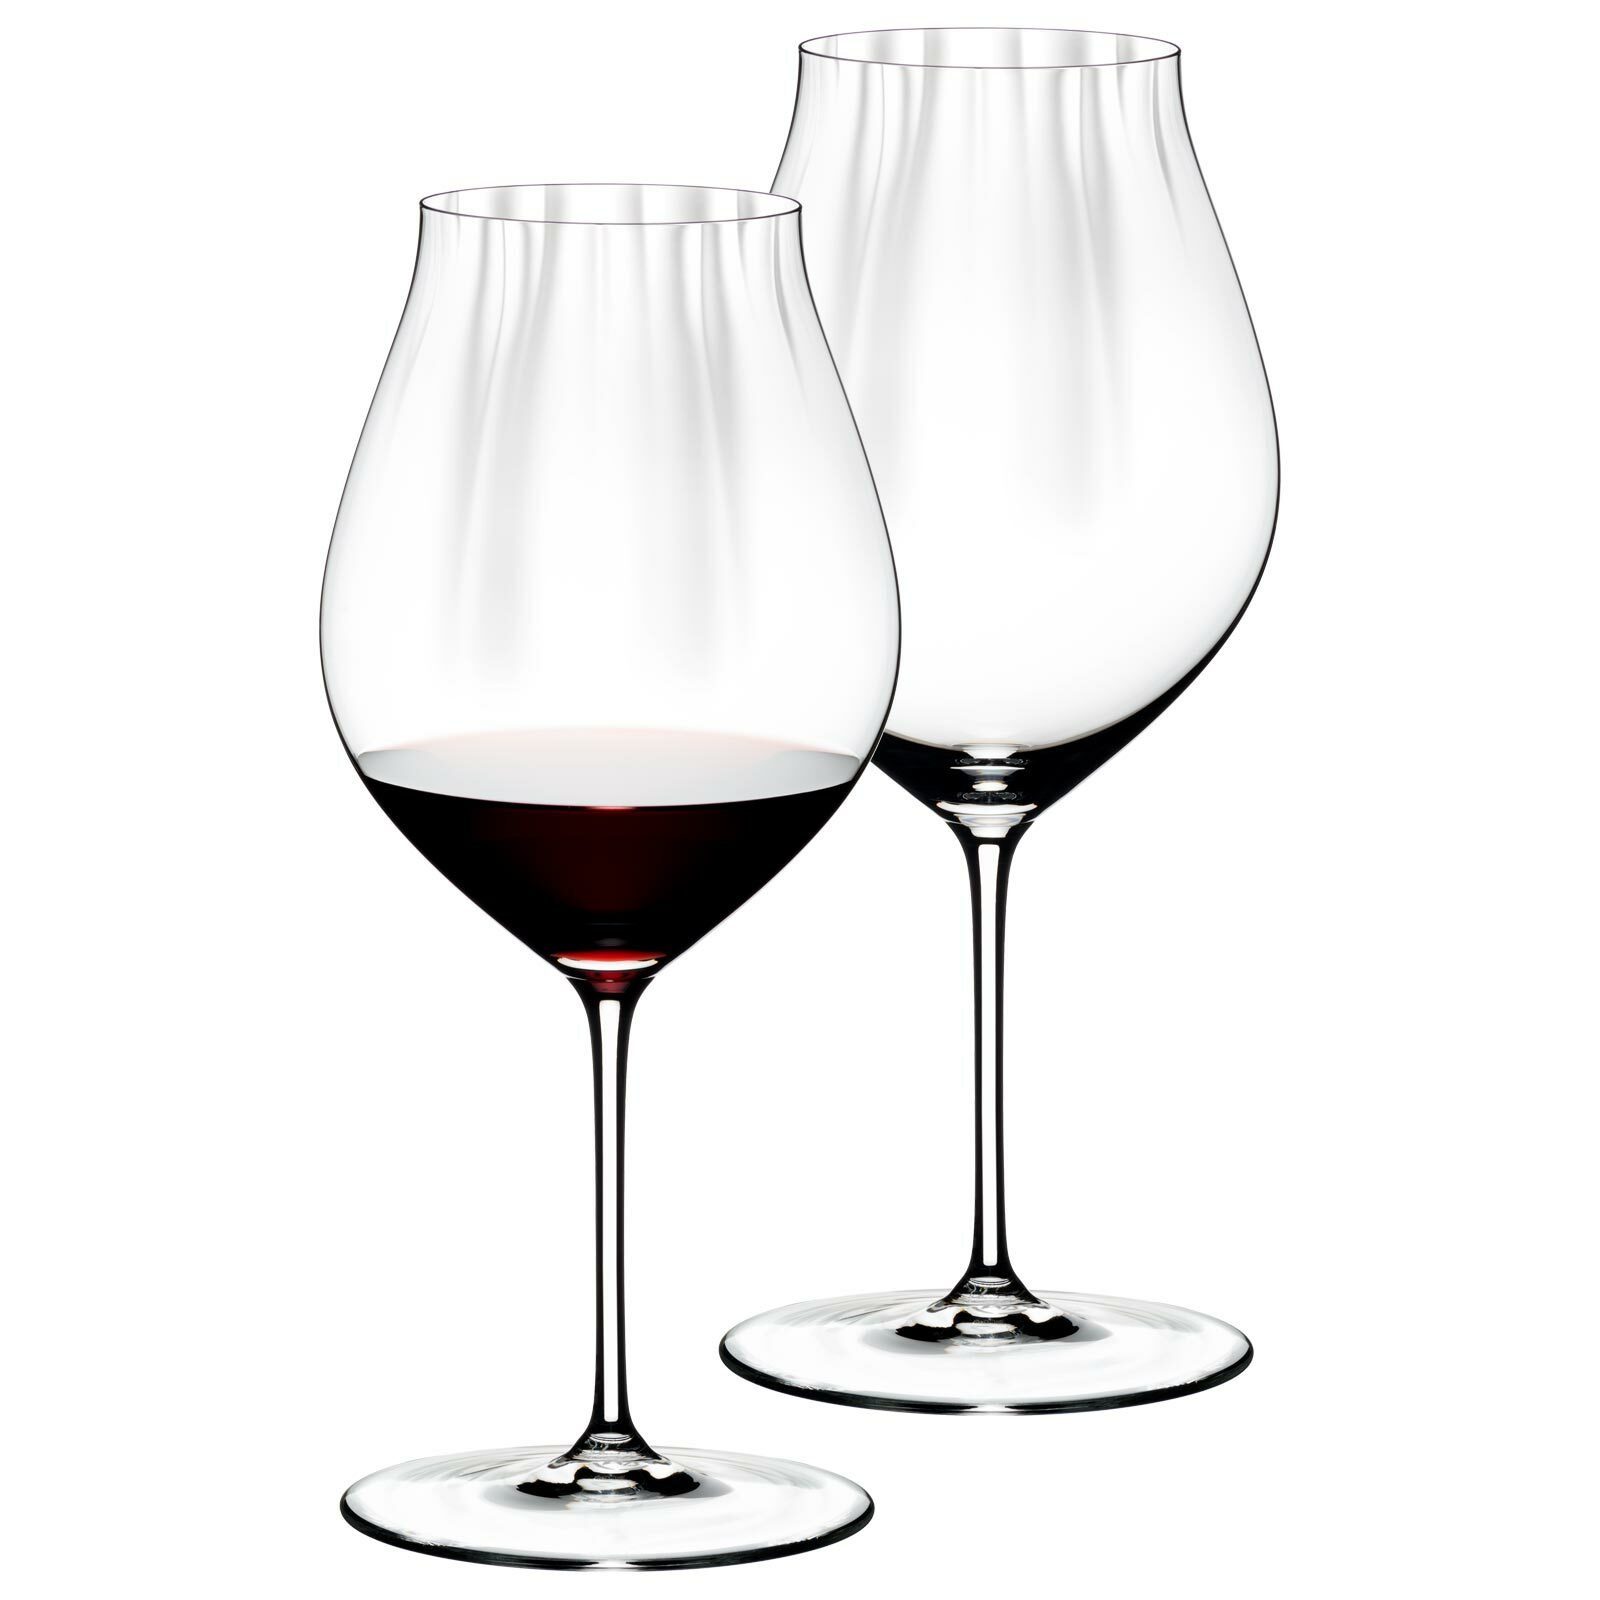 RIEDEL Weinglas online kaufen | OTTO